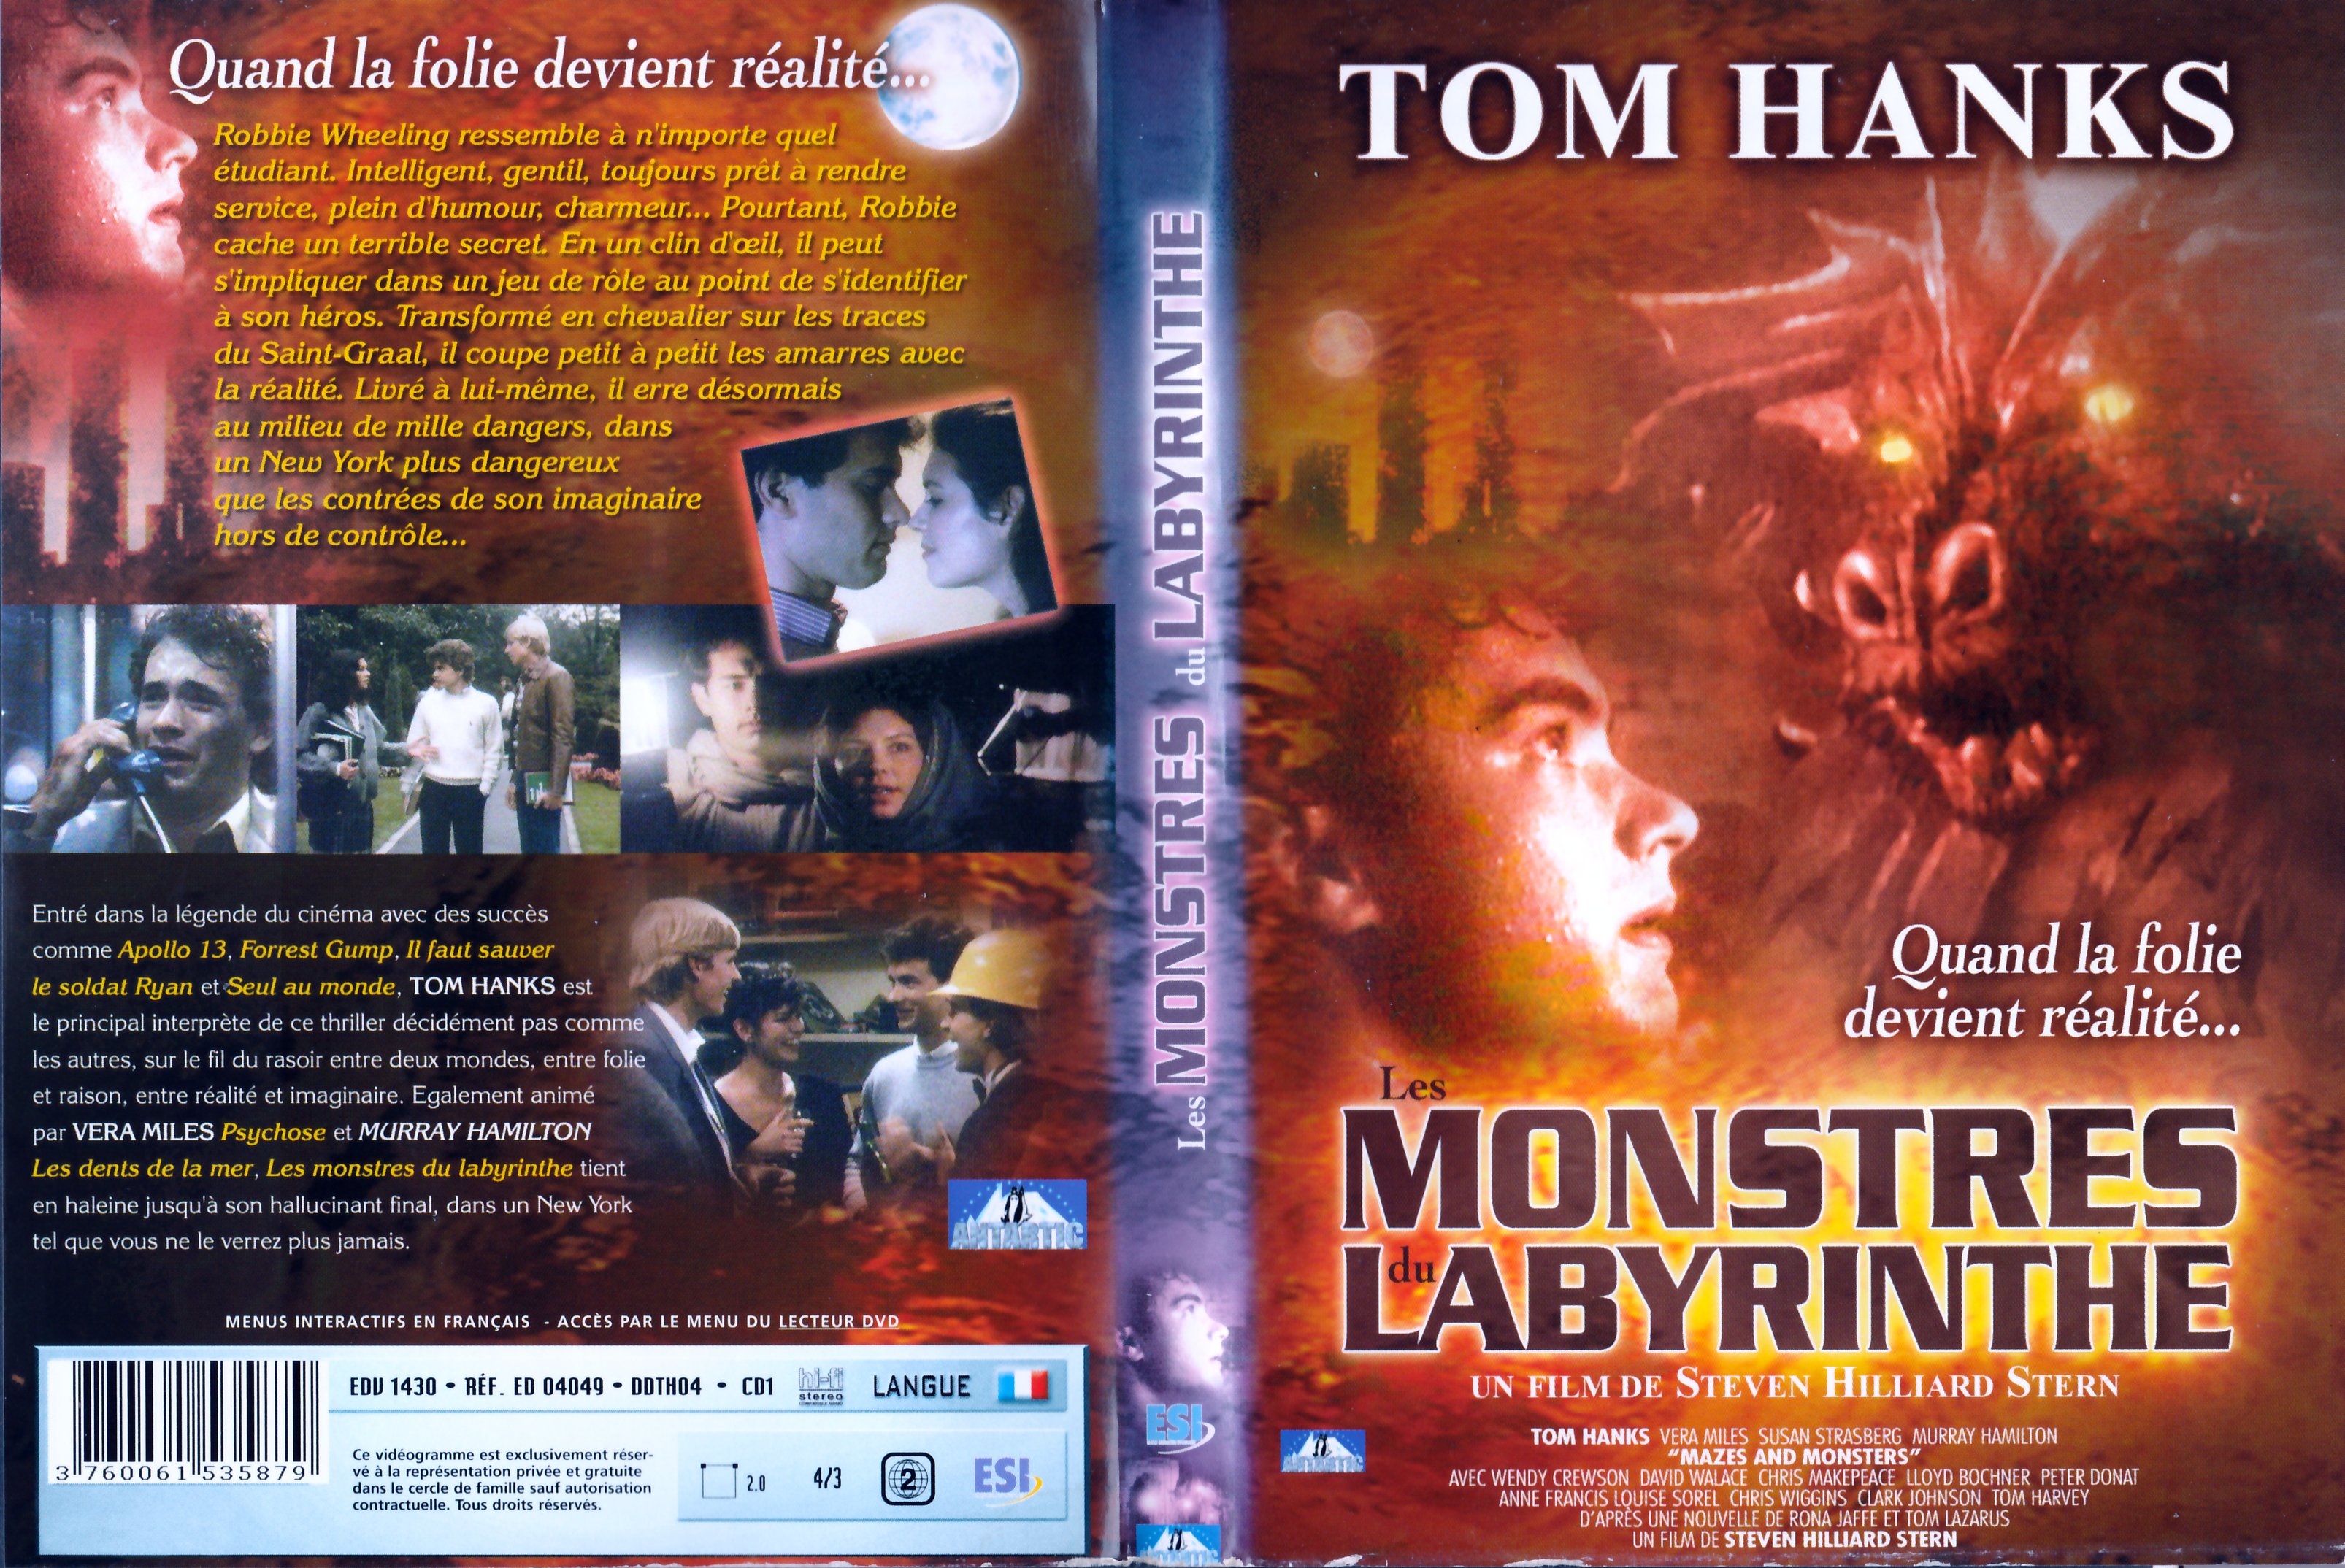 Jaquette DVD Les monstres du labyrinthe V2